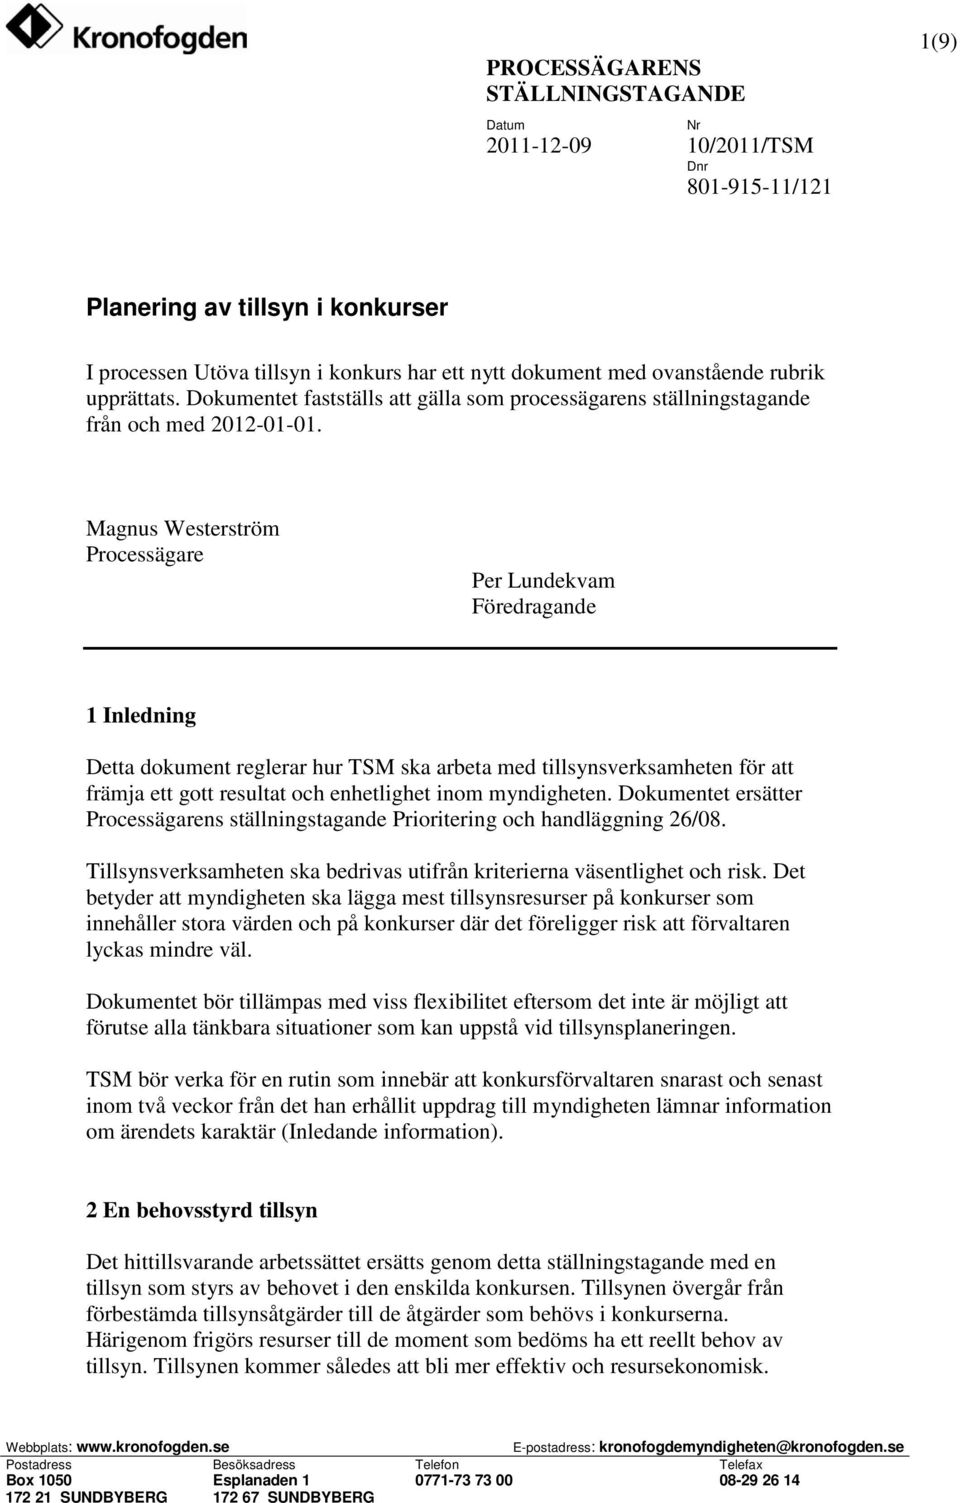 Magnus Westerström Processägare Per Lundekvam Föredragande 1 Inledning Detta dokument reglerar hur TSM ska arbeta med tillsynsverksamheten för att främja ett gott resultat och enhetlighet inom